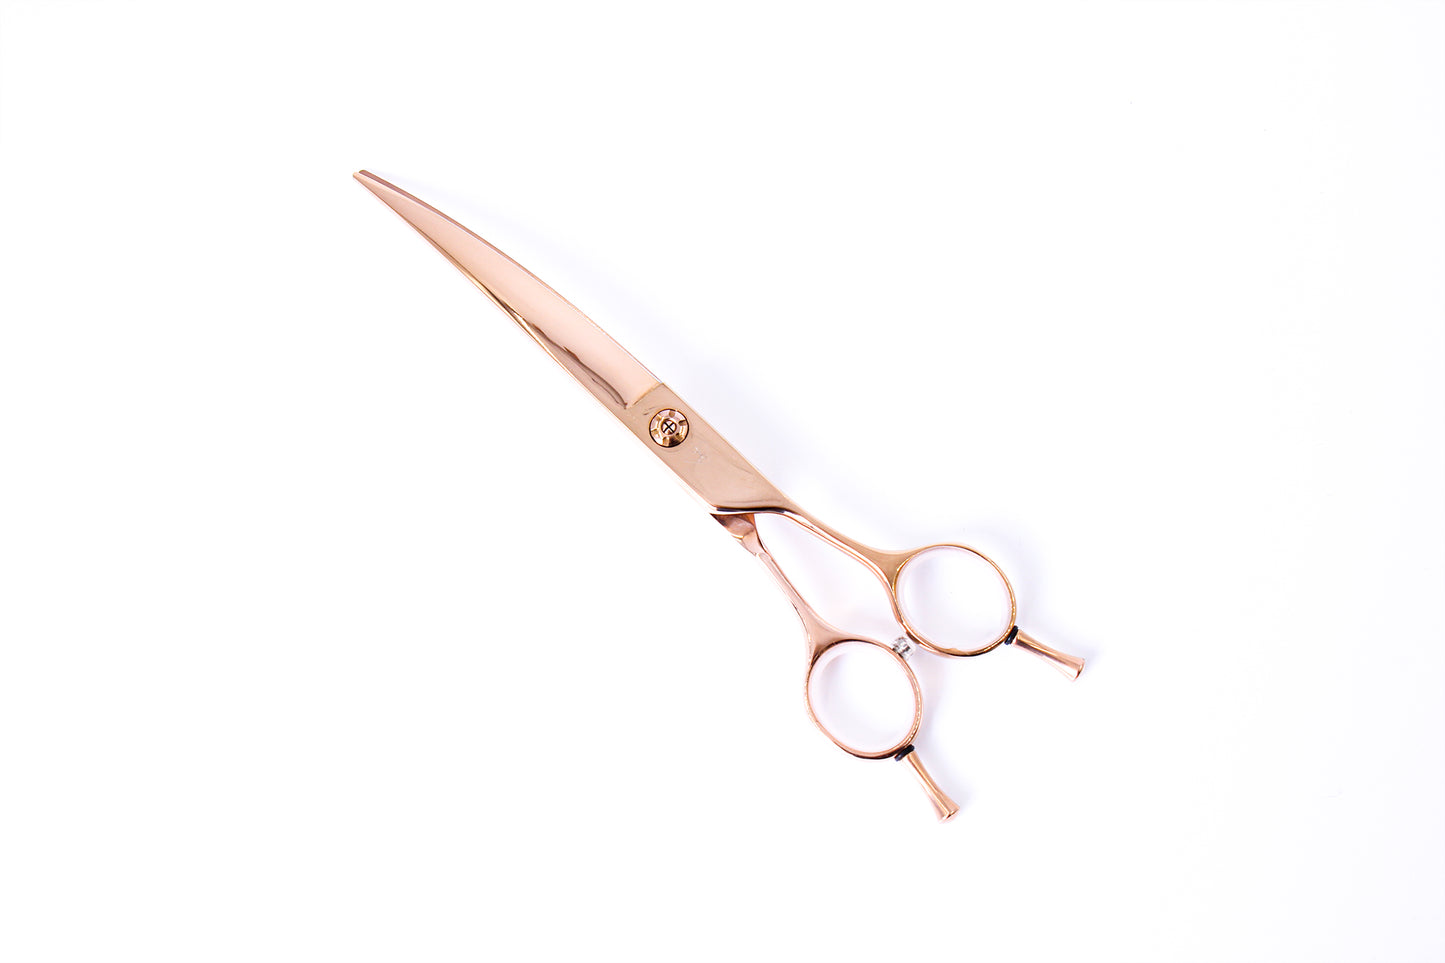 Straight left-handed scissor